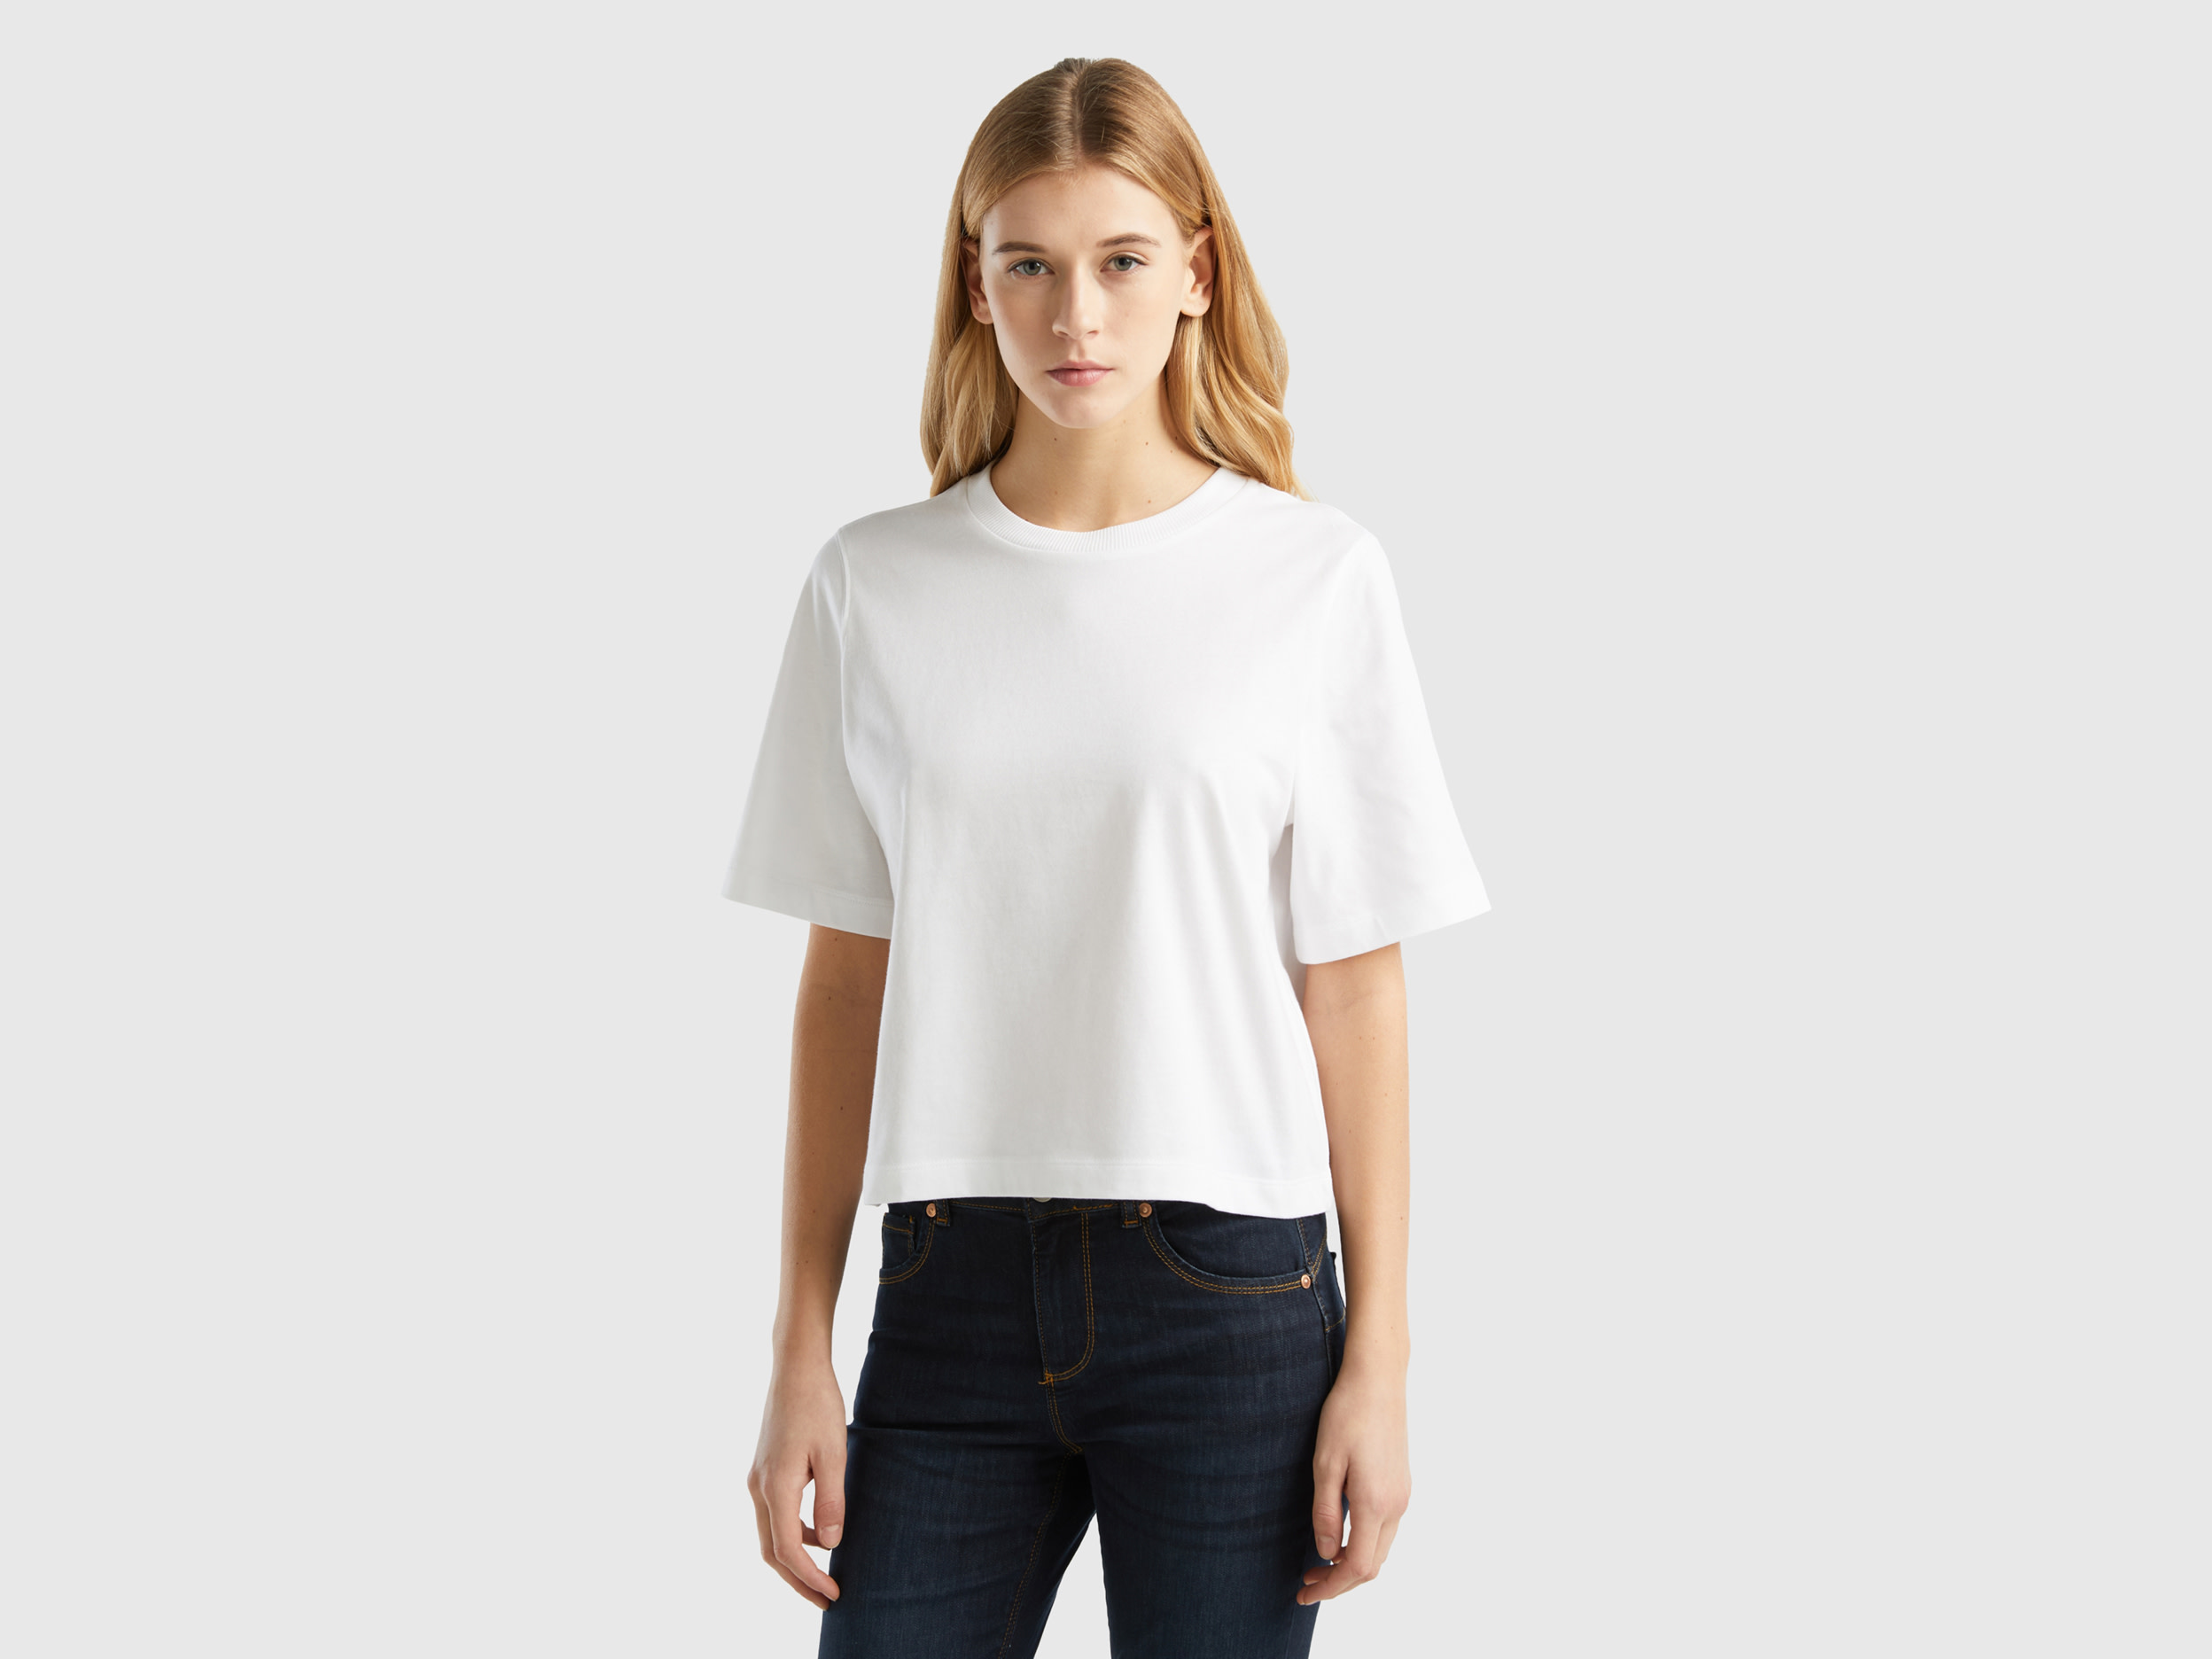 Benetton, 100% Cotton Boxy Fit T-shirt, size L, White, Women